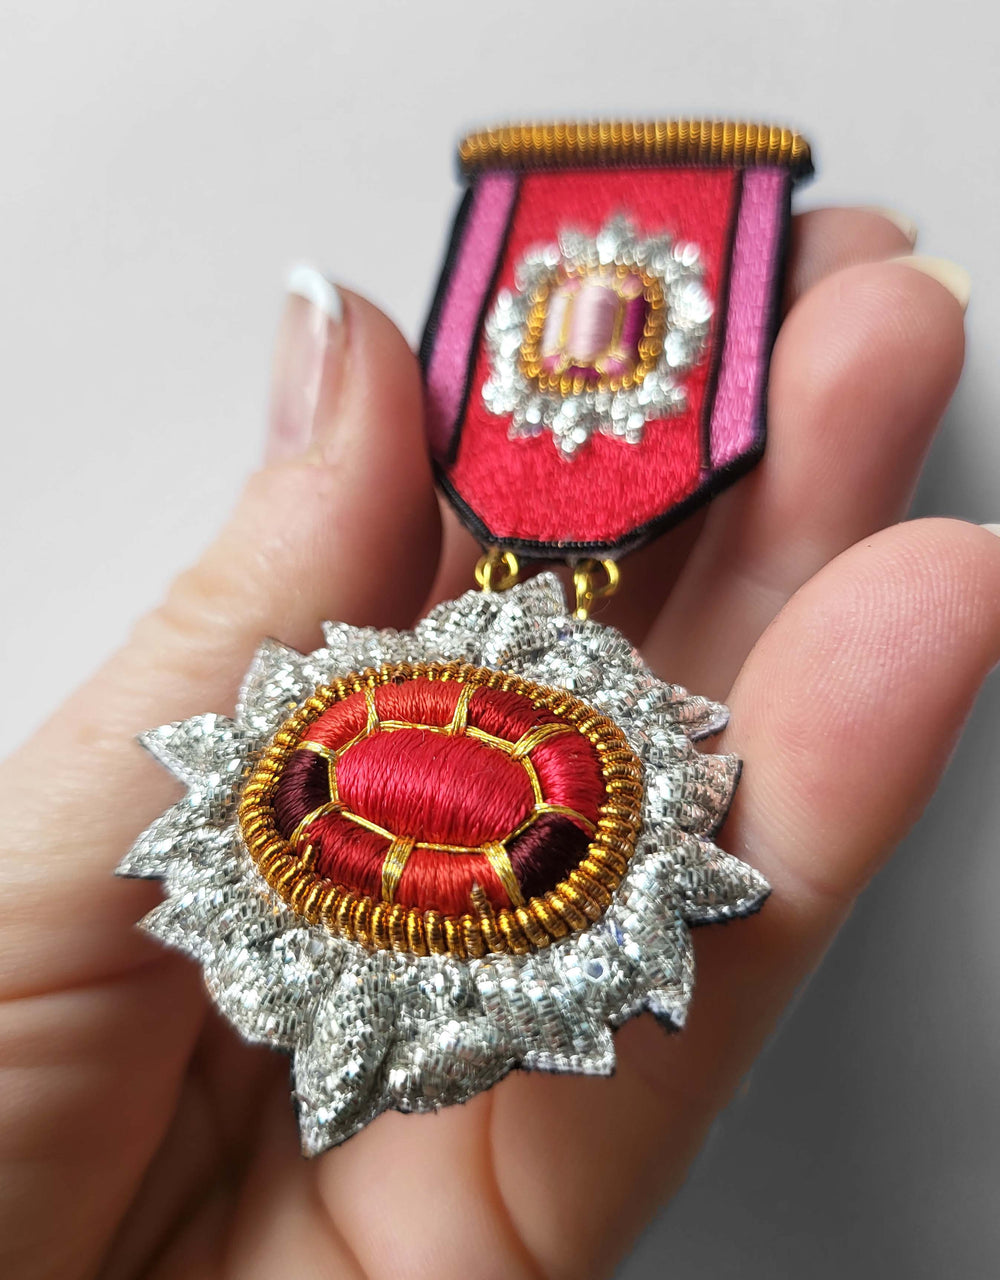 Médaille Youkounkoun rubis et grenat